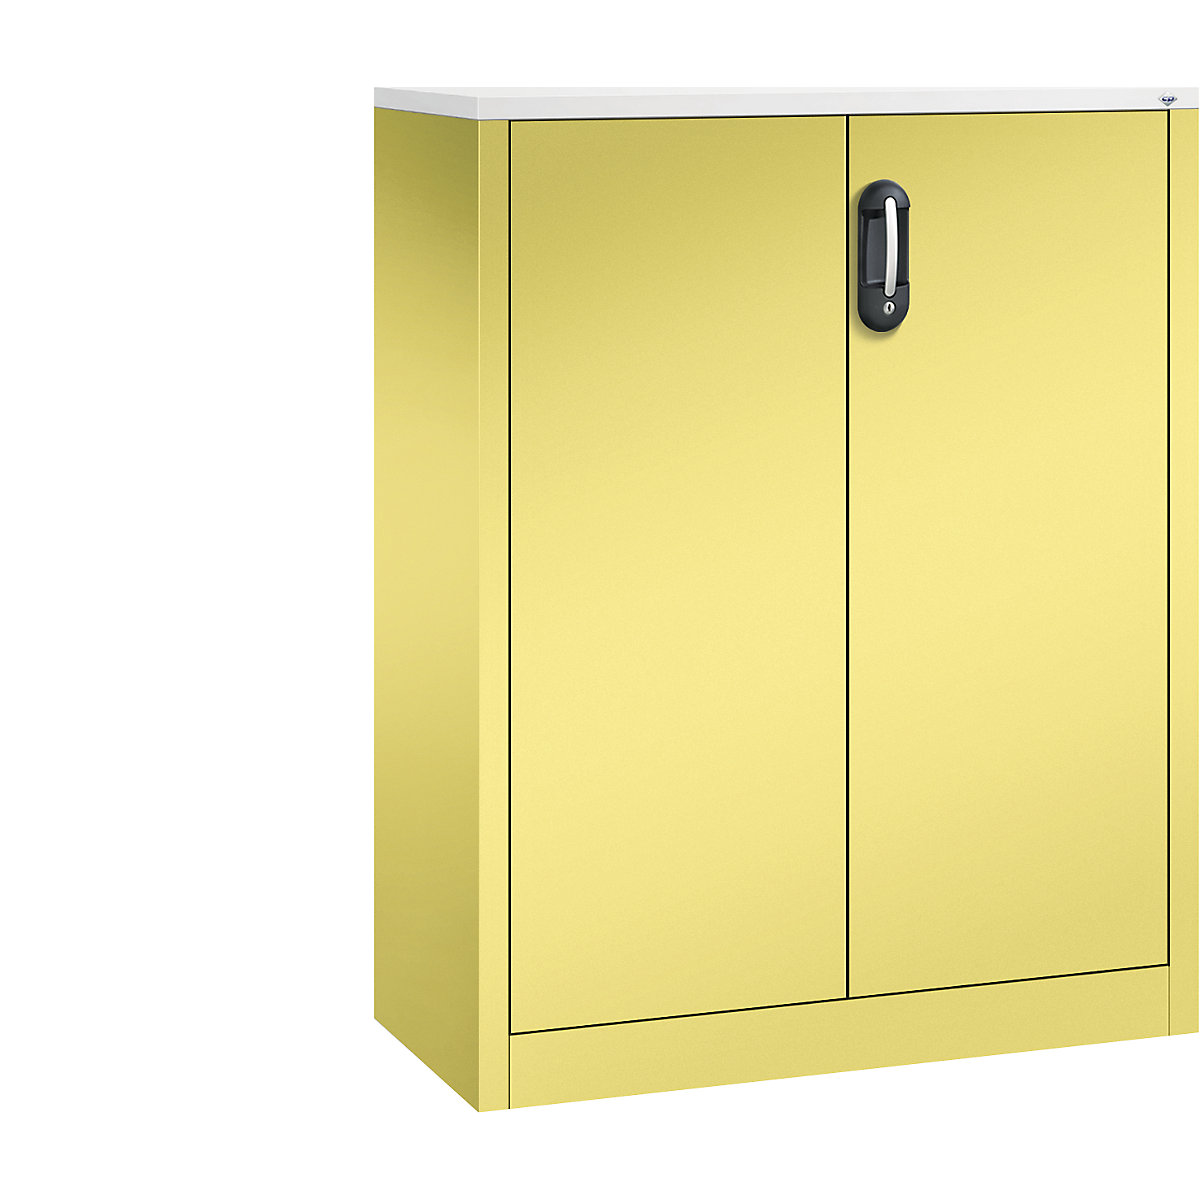 Bočná skrinka na spisy ACURADO – C+P, 3 výšky zakladačov, v x š x h 1200 x 930 x 400 mm, sírová žltá / sírová žltá-21